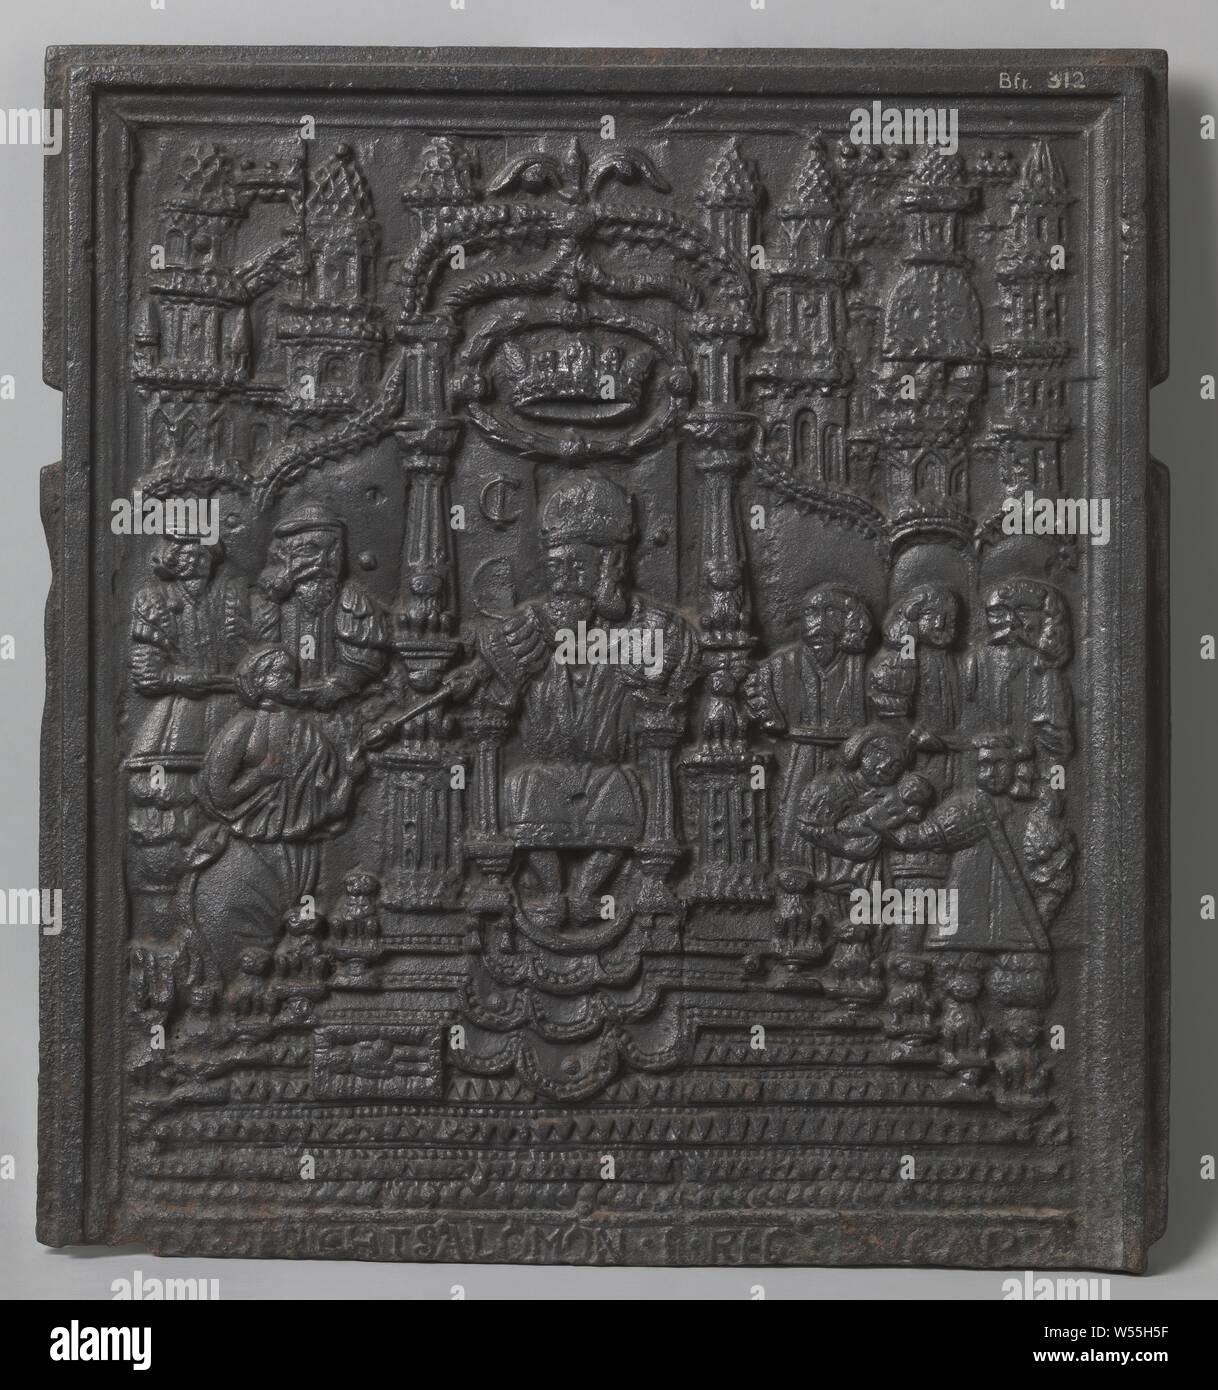 Fragmento de la placa de la estufa con la sentencia de Salomón, fragmento  de una placa de la estufa de hierro fundido, dividido en dos zonas. Sólo la  parte superior se ha